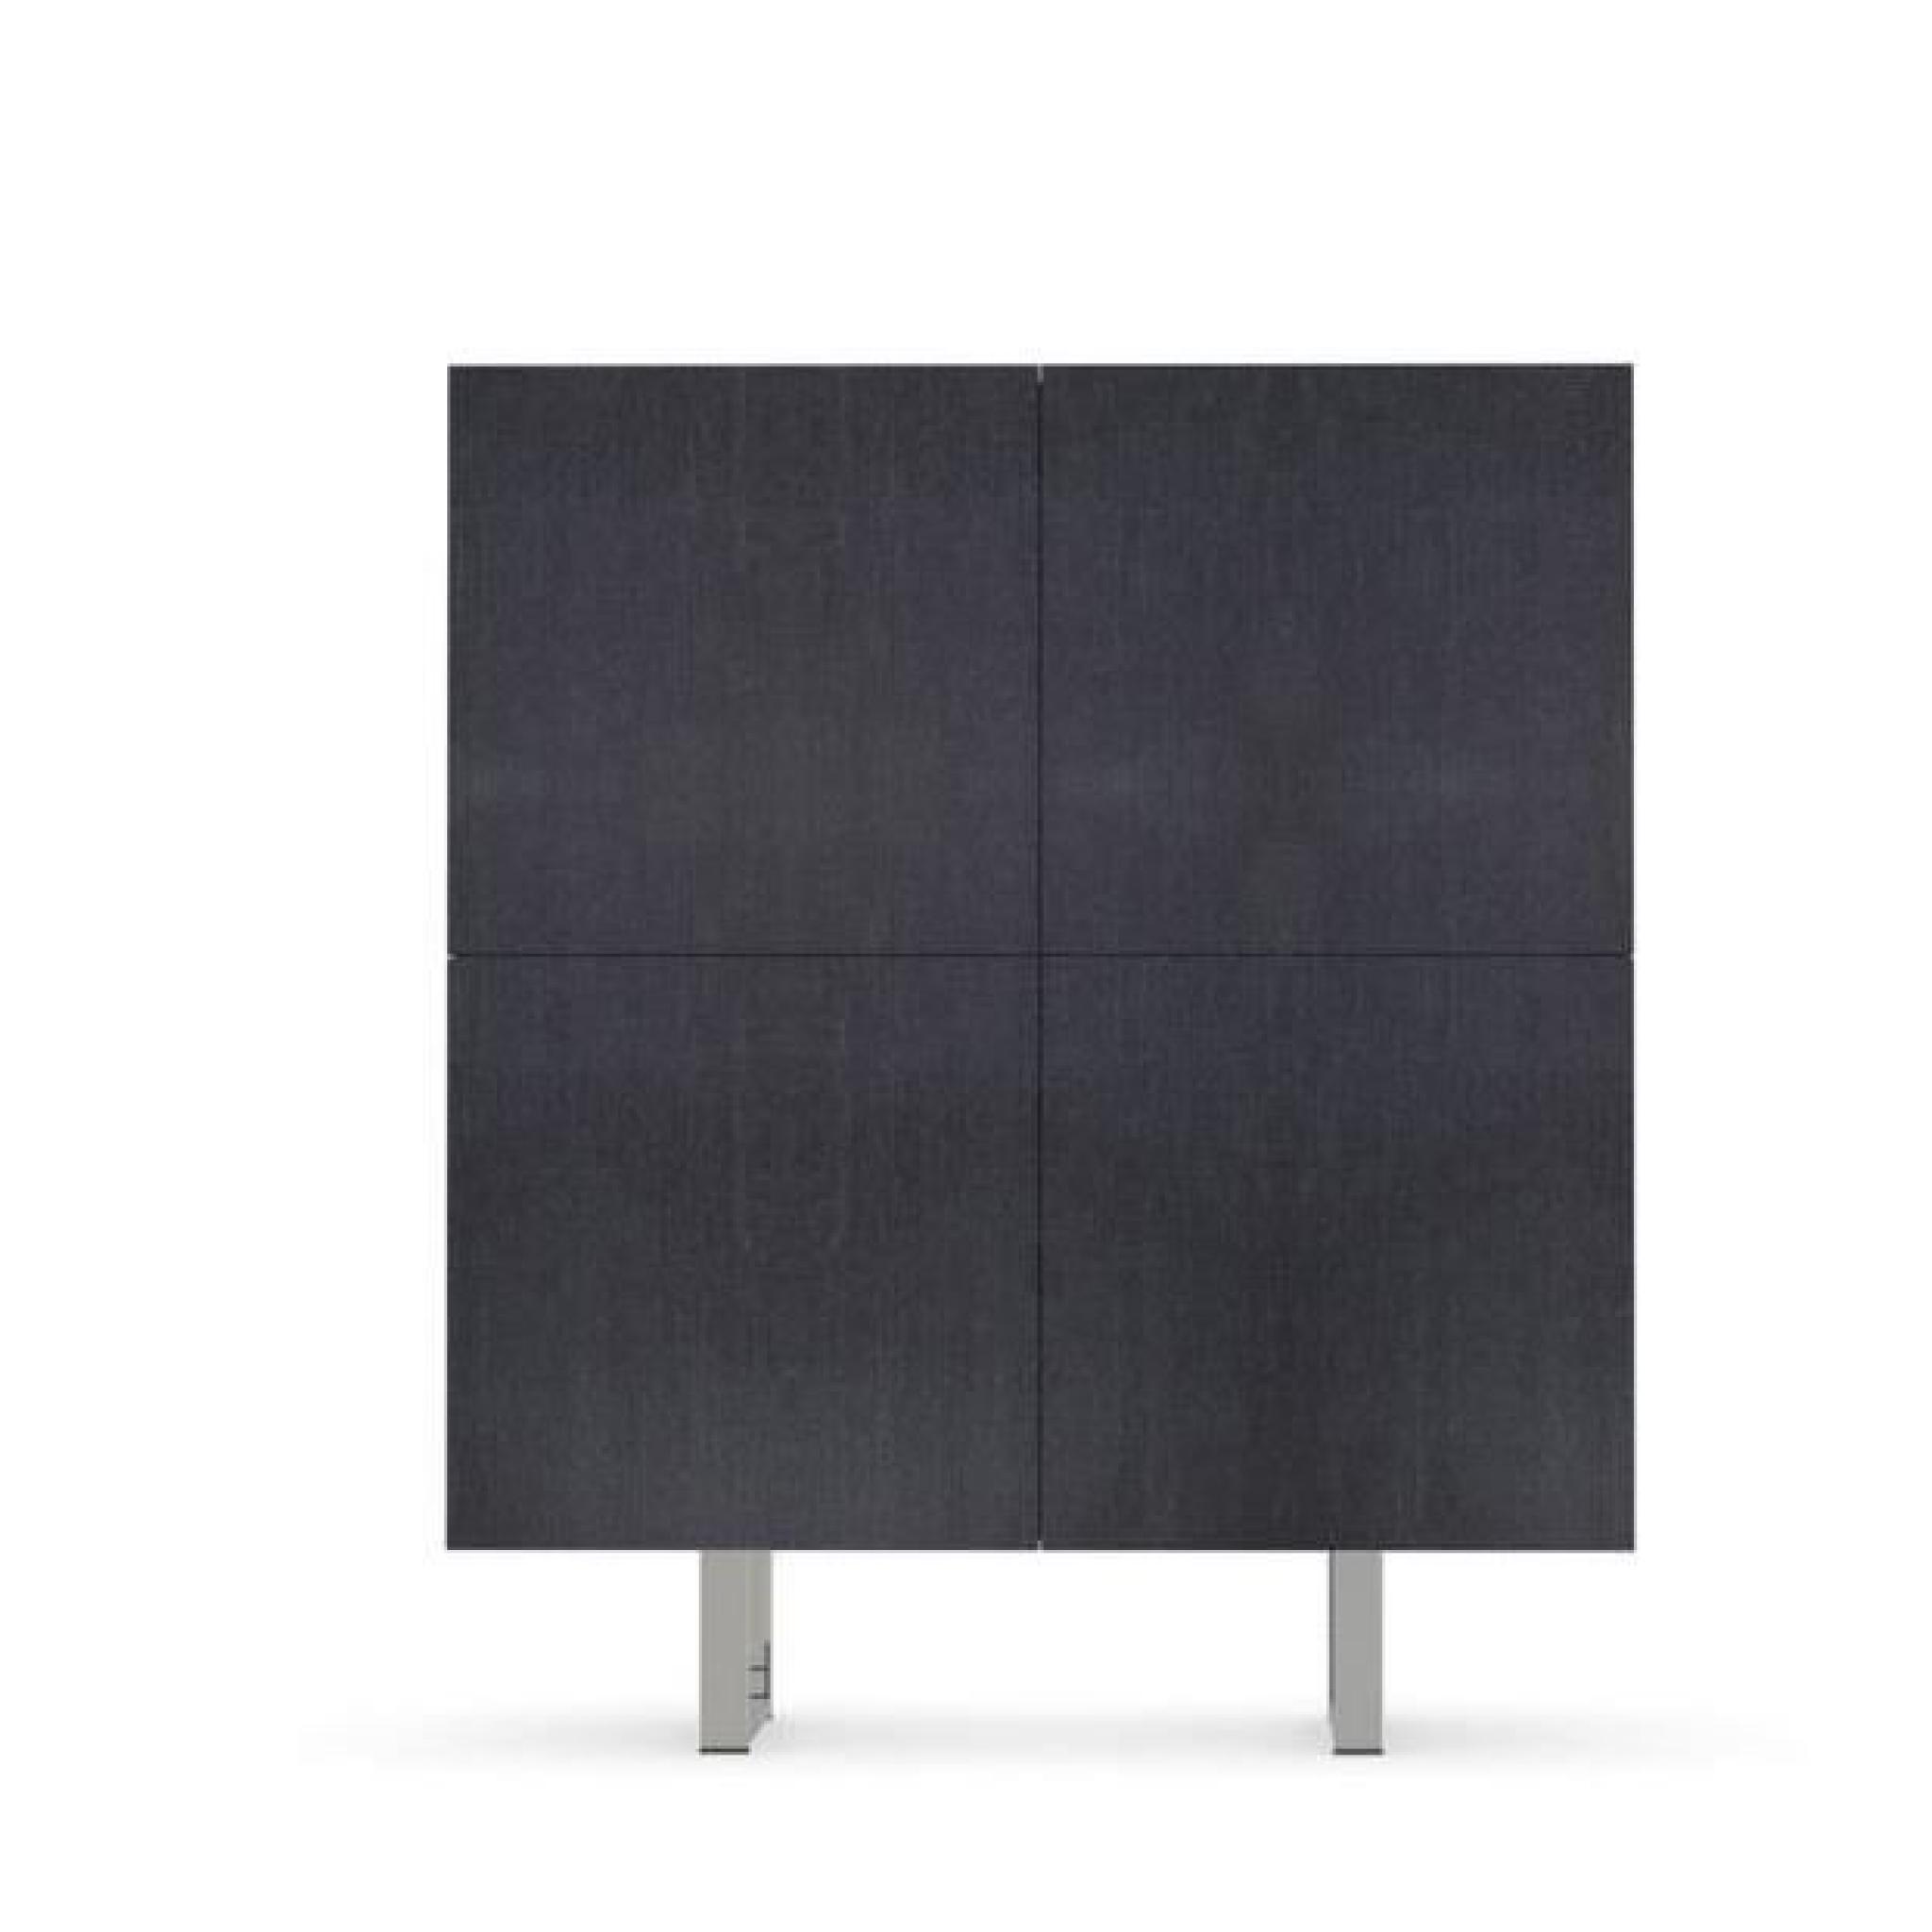 Buffet haut design HORIZON de CALLIGARIS gris graphite dessus verre noir 4 portes pas cher